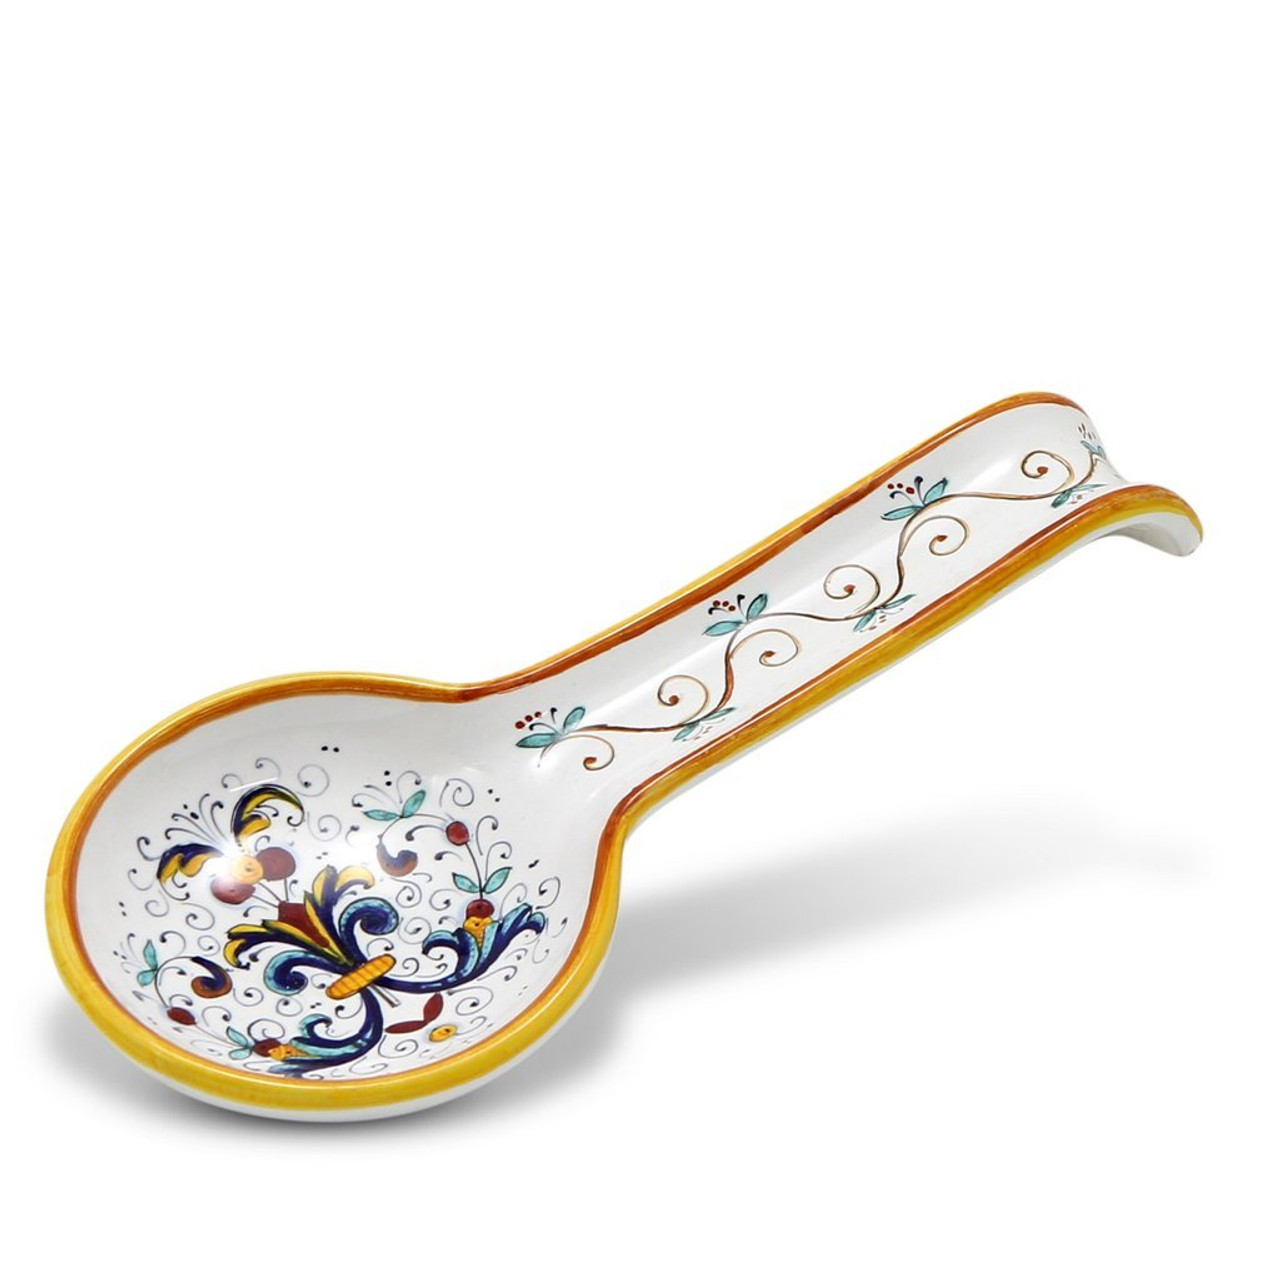 Italian Ceramic Spoon Rest Deruta  58656.1548982024 ?c=2